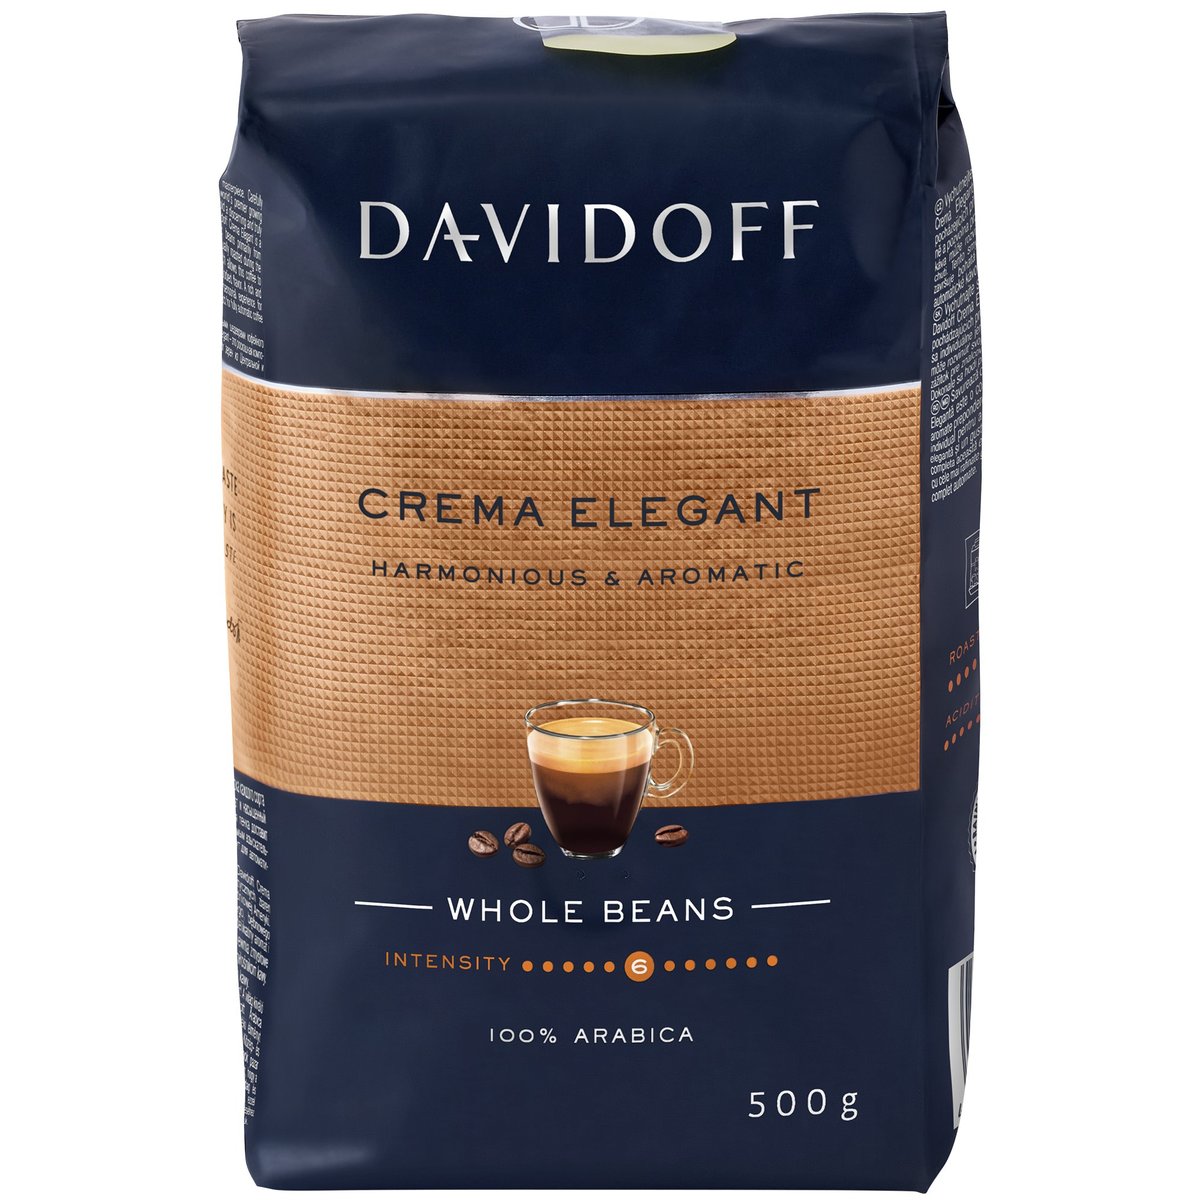 Davidoff Café Créme pražená zrnková káva